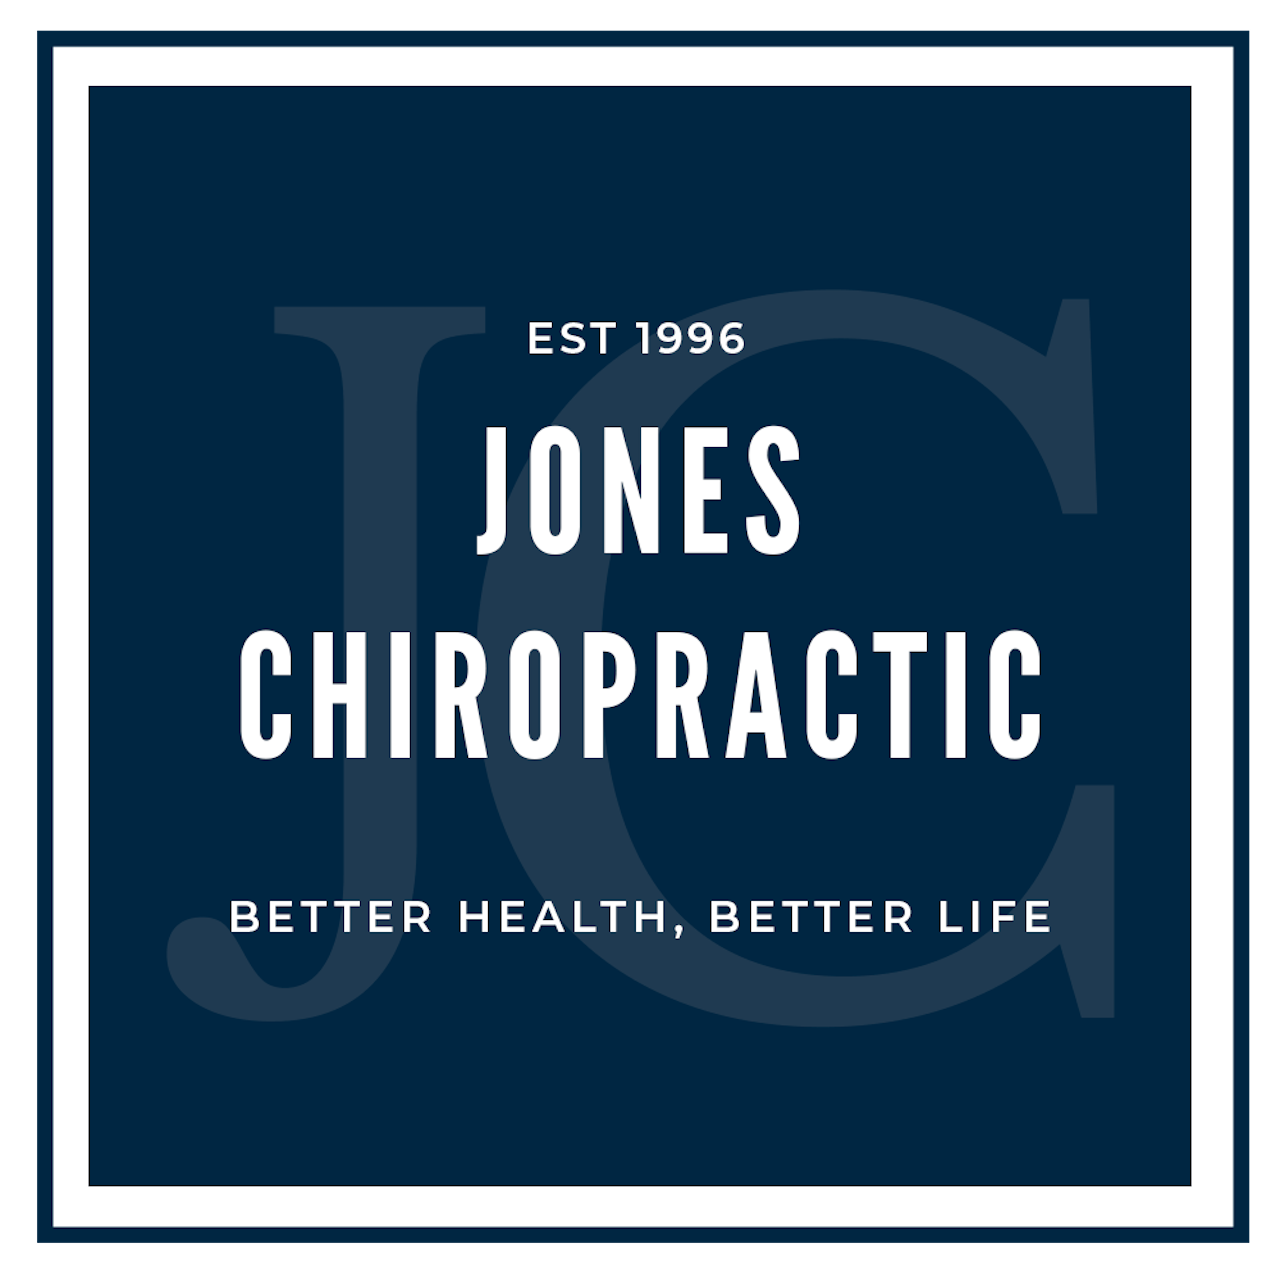 Jones Chiropractic